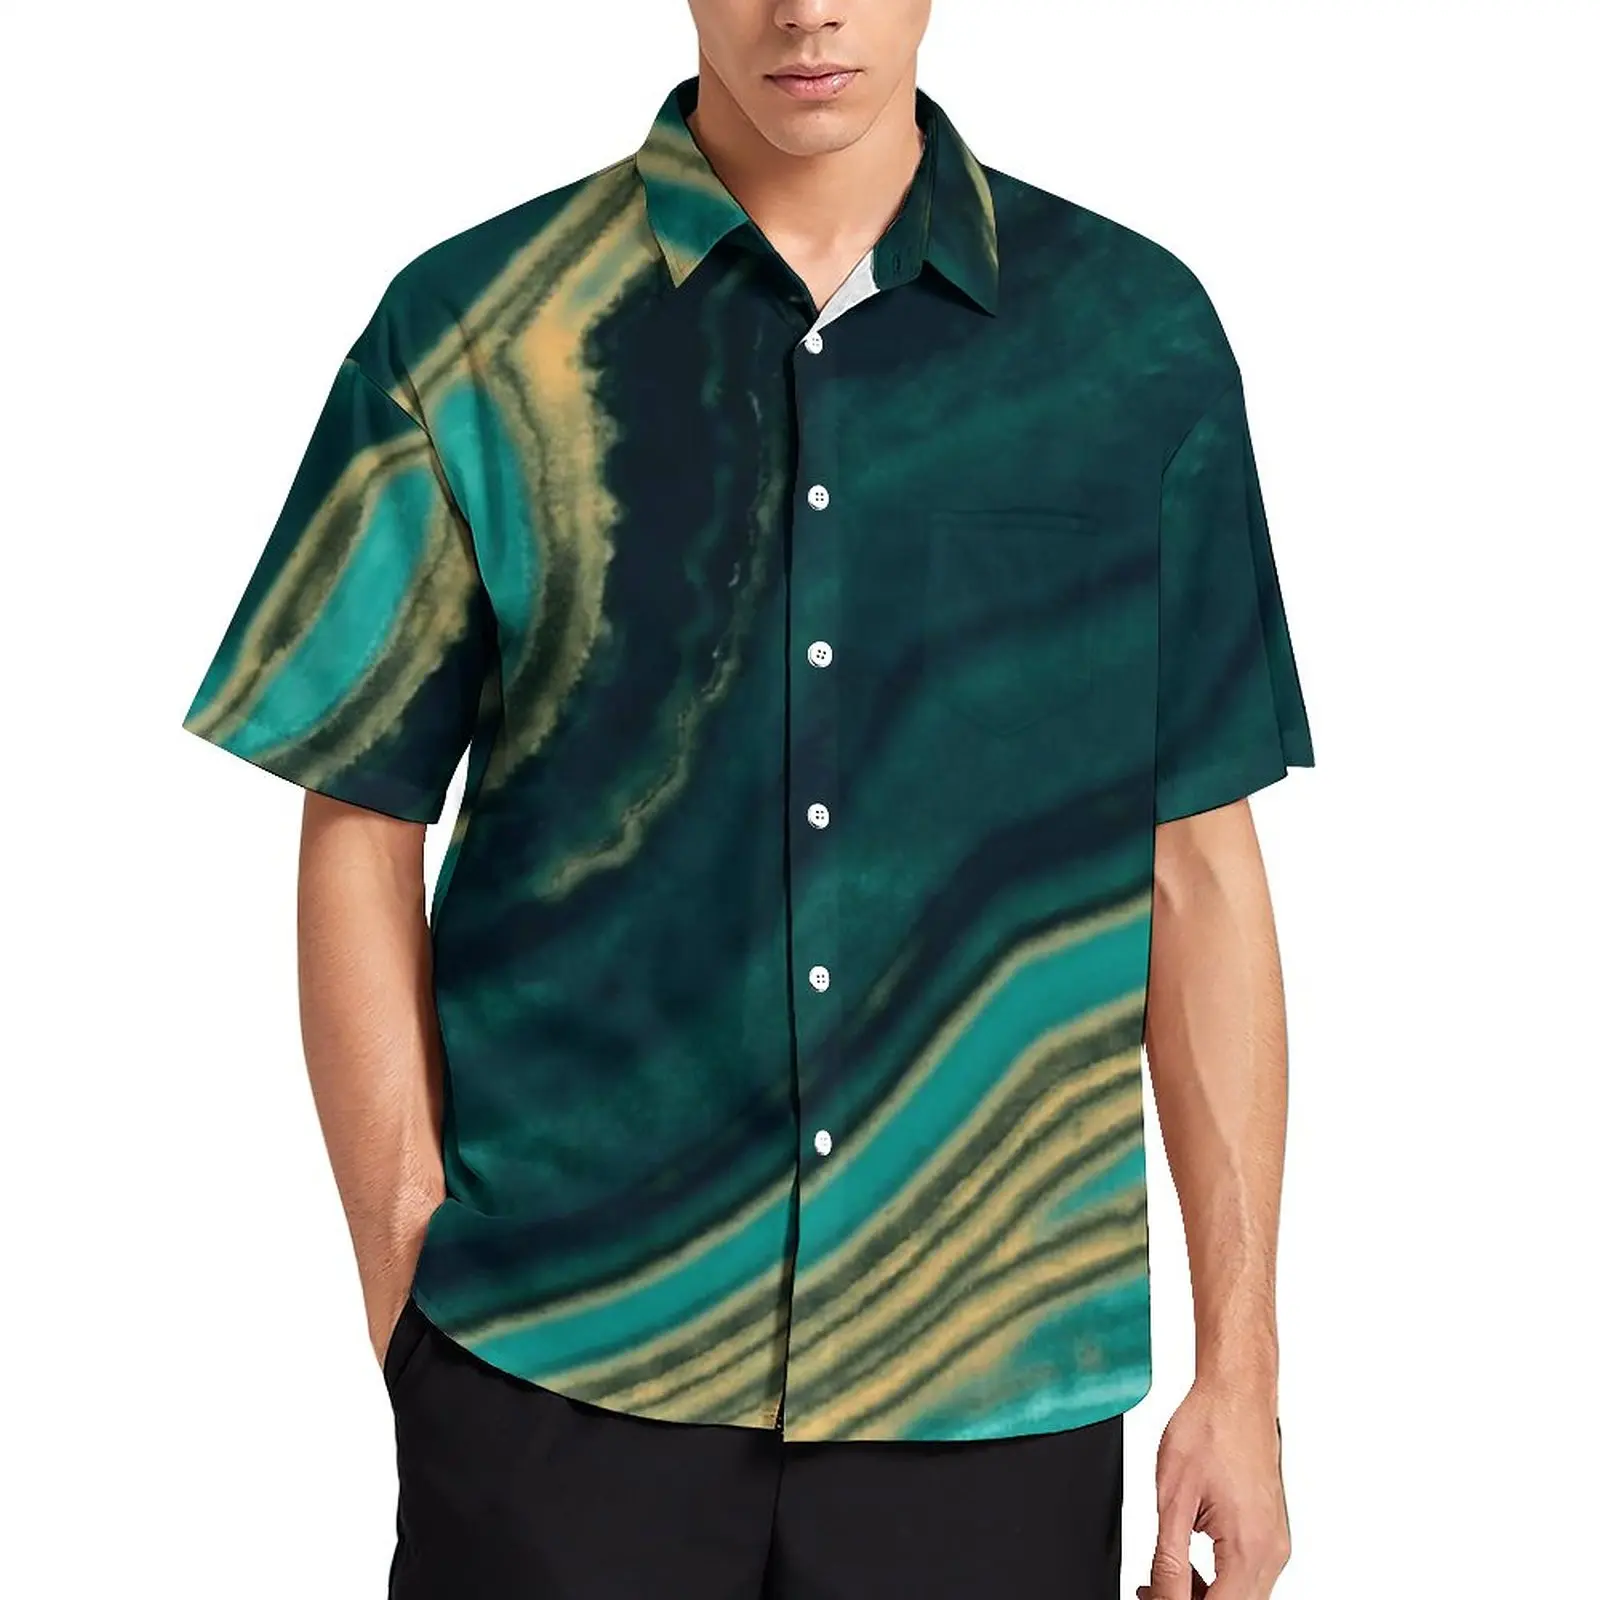 

Рубашка мужская с мраморным рисунком, повседневная винтажная блузка с коротким рукавом, цвет морской волны и металл, текстура золото, мрамо...